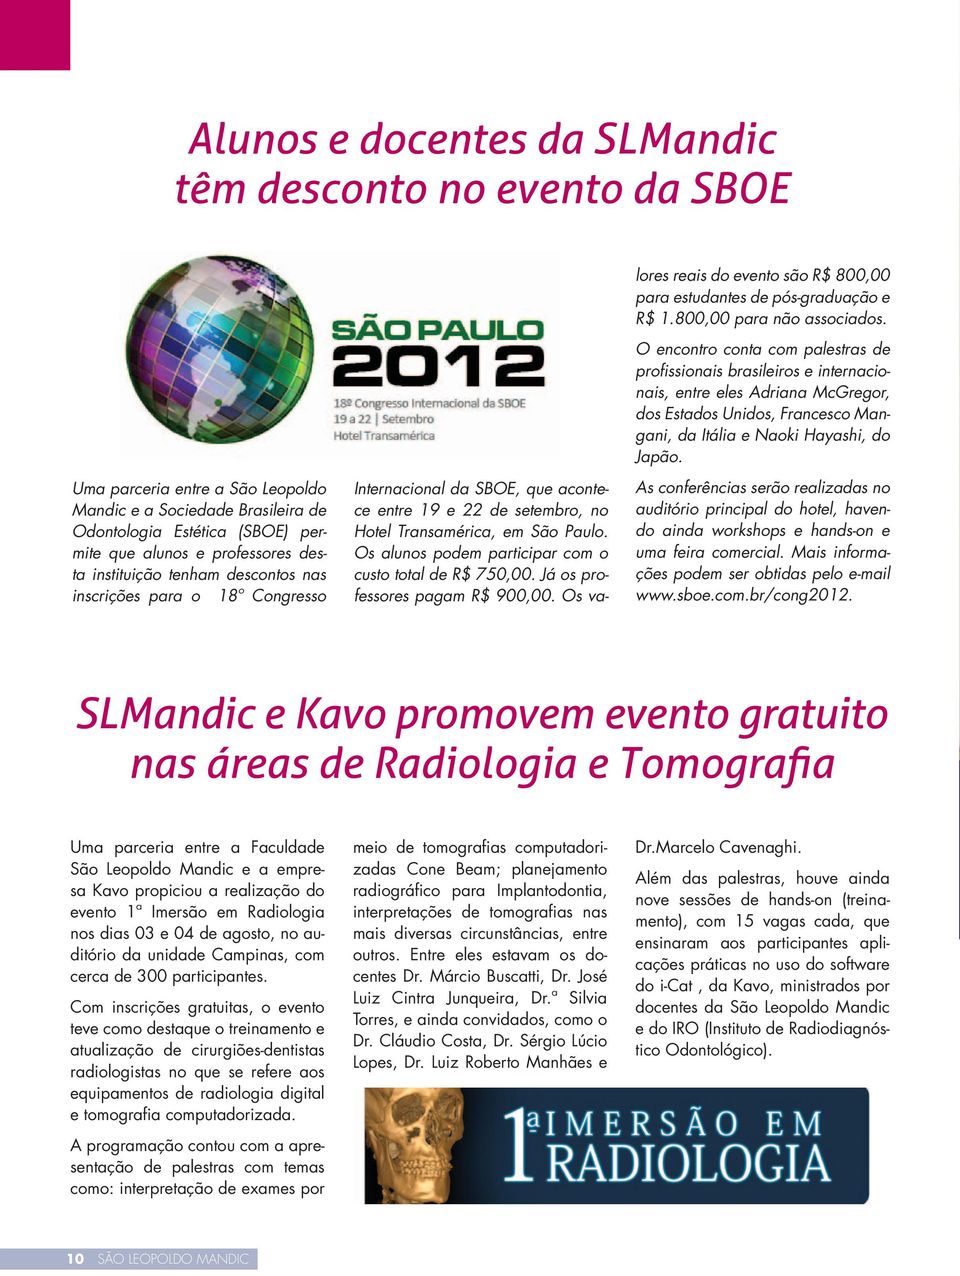 Uma parceria entre a São Leopoldo Mandic e a Sociedade Brasileira de Odontologia Estética (SBOE) permite que alunos e professores desta instituição tenham descontos nas inscrições para o 18º